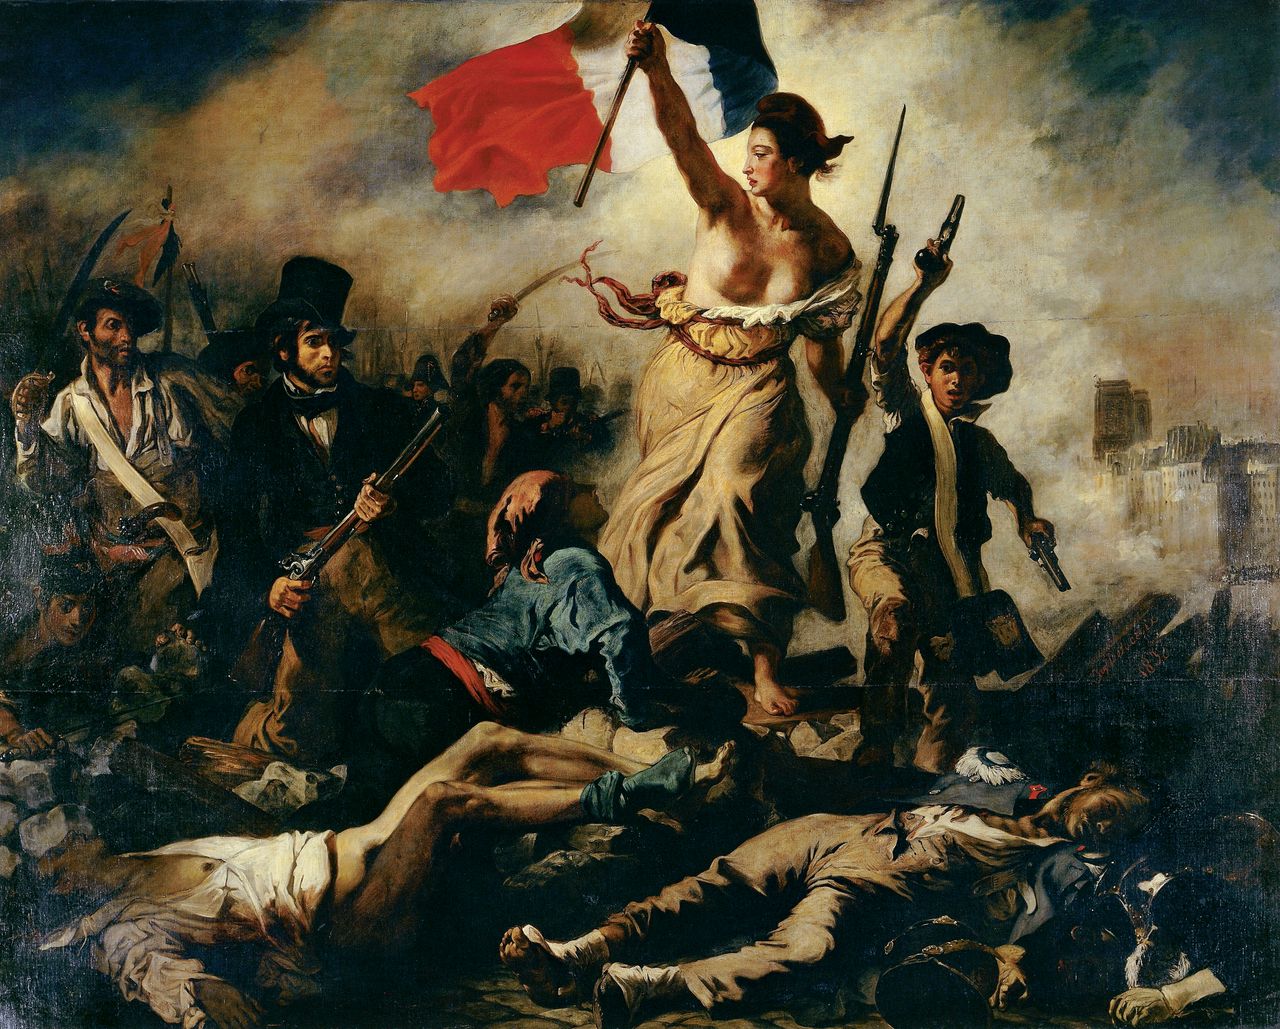 Η Ελευθερία οδηγεί το Λαό (γαλλ. La liberté guidant le peuple) είναι πίνακας του Γάλλου ζωγράφου Ευγένιου Ντελακρουά εμπνευσμένο από την Ιουλιανή επανάσταση του 1830 (Μουσείο του Λόβρου (Photo by DeAgostini/Getty Images)